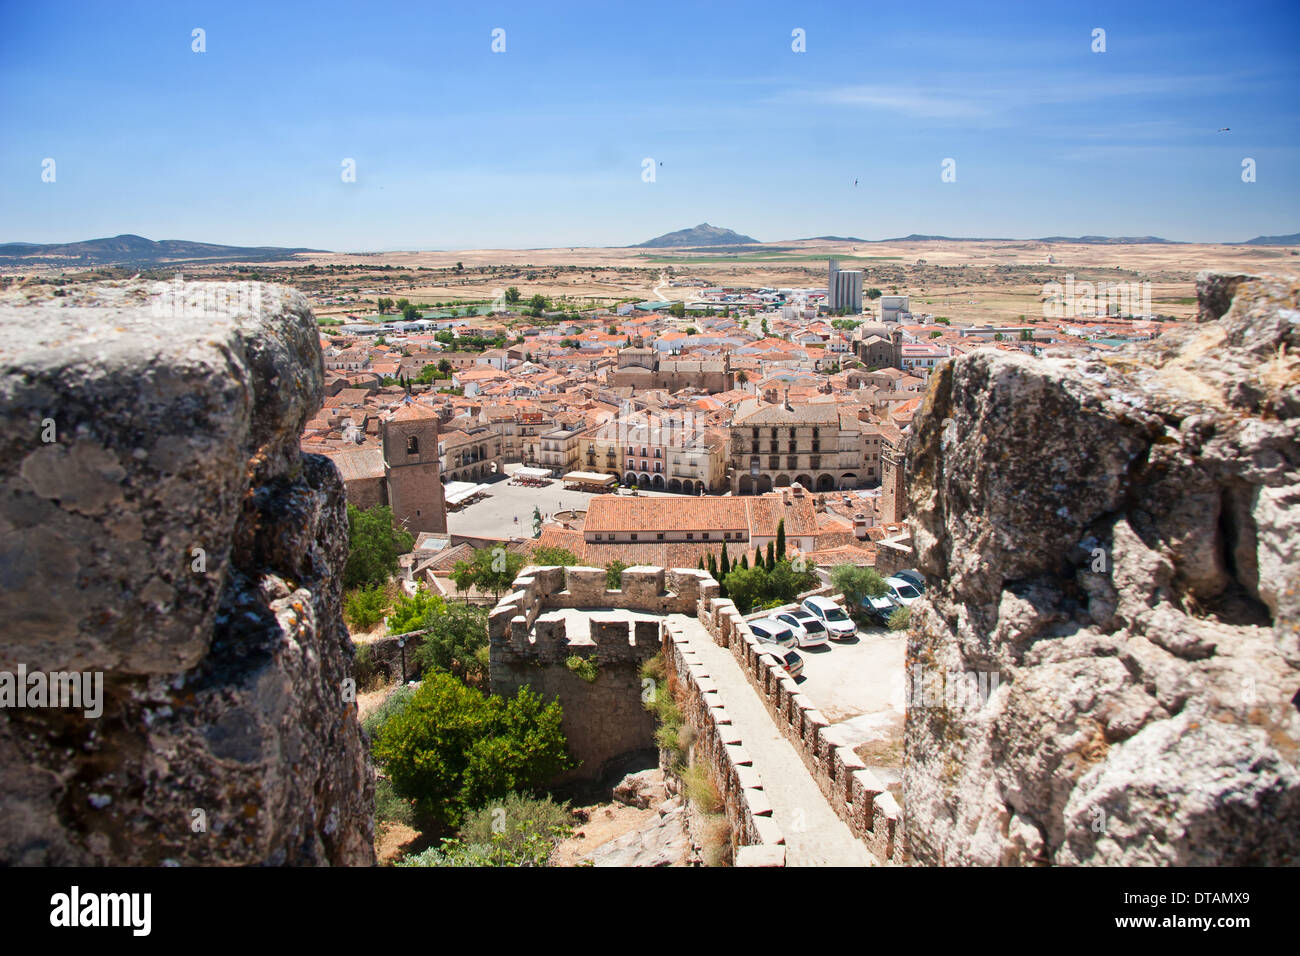 Vista general de la ciudad de Trujillo Foto de stock